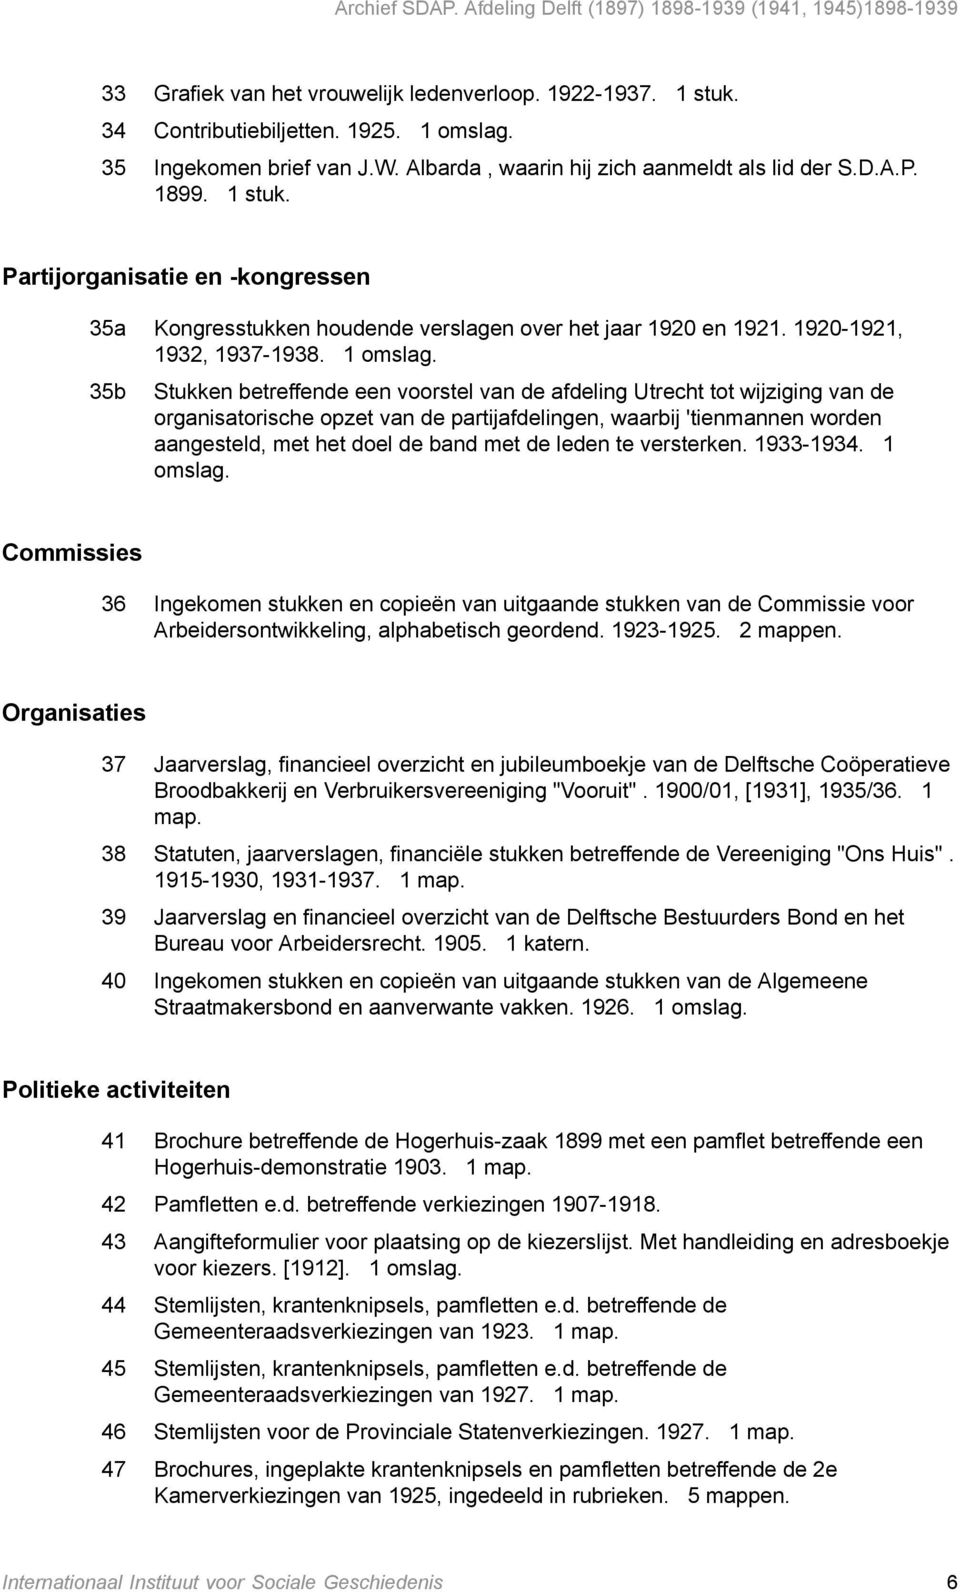 35b Stukken betreffende een voorstel van de afdeling Utrecht tot wijziging van de organisatorische opzet van de partijafdelingen, waarbij 'tienmannen worden aangesteld, met het doel de band met de